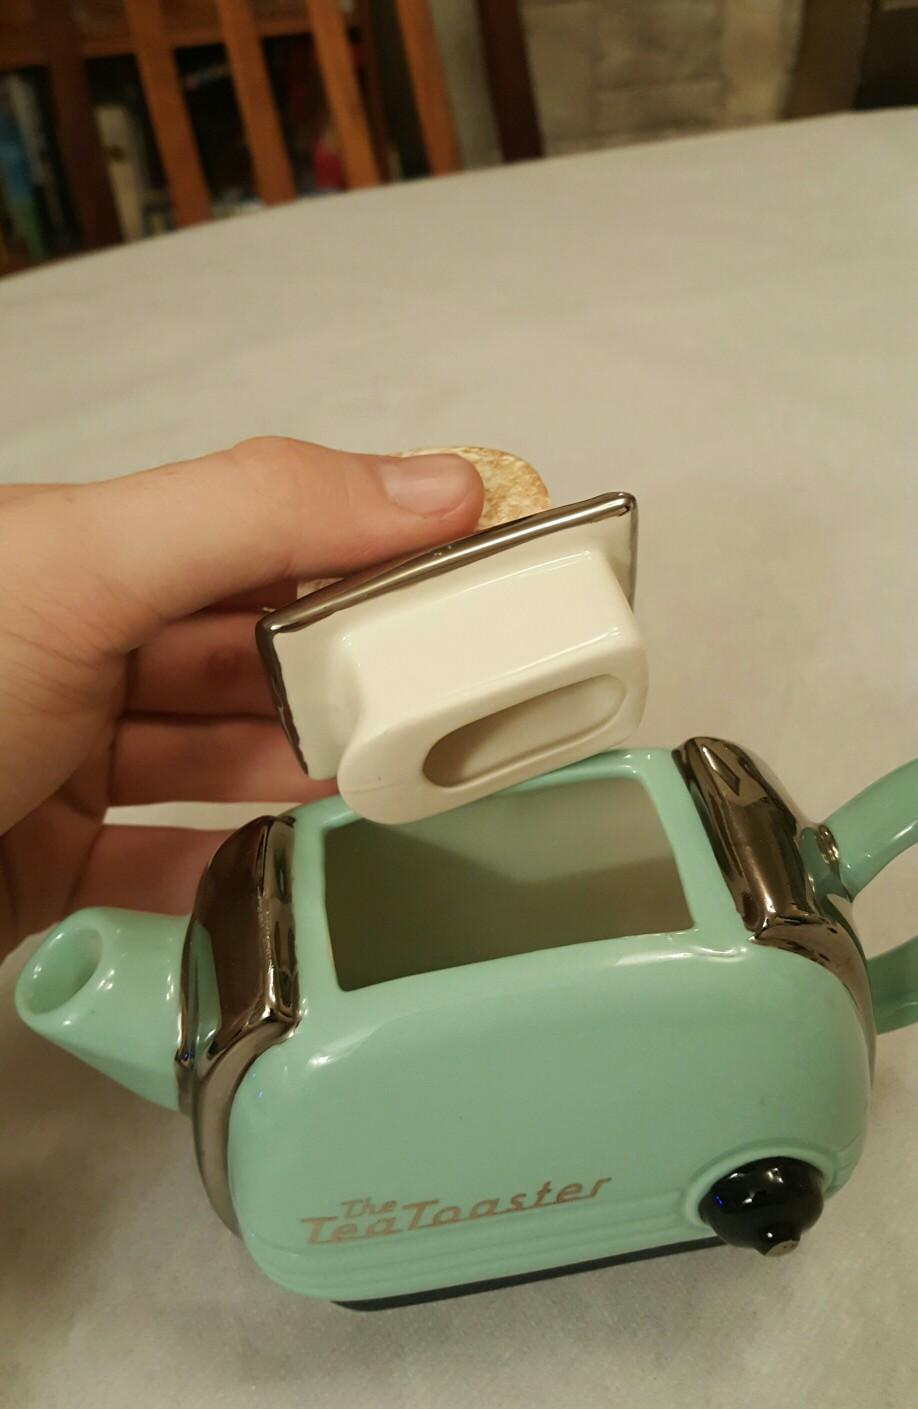 0円 充実の品 英国Teapottery社製のティーポット Toaster M